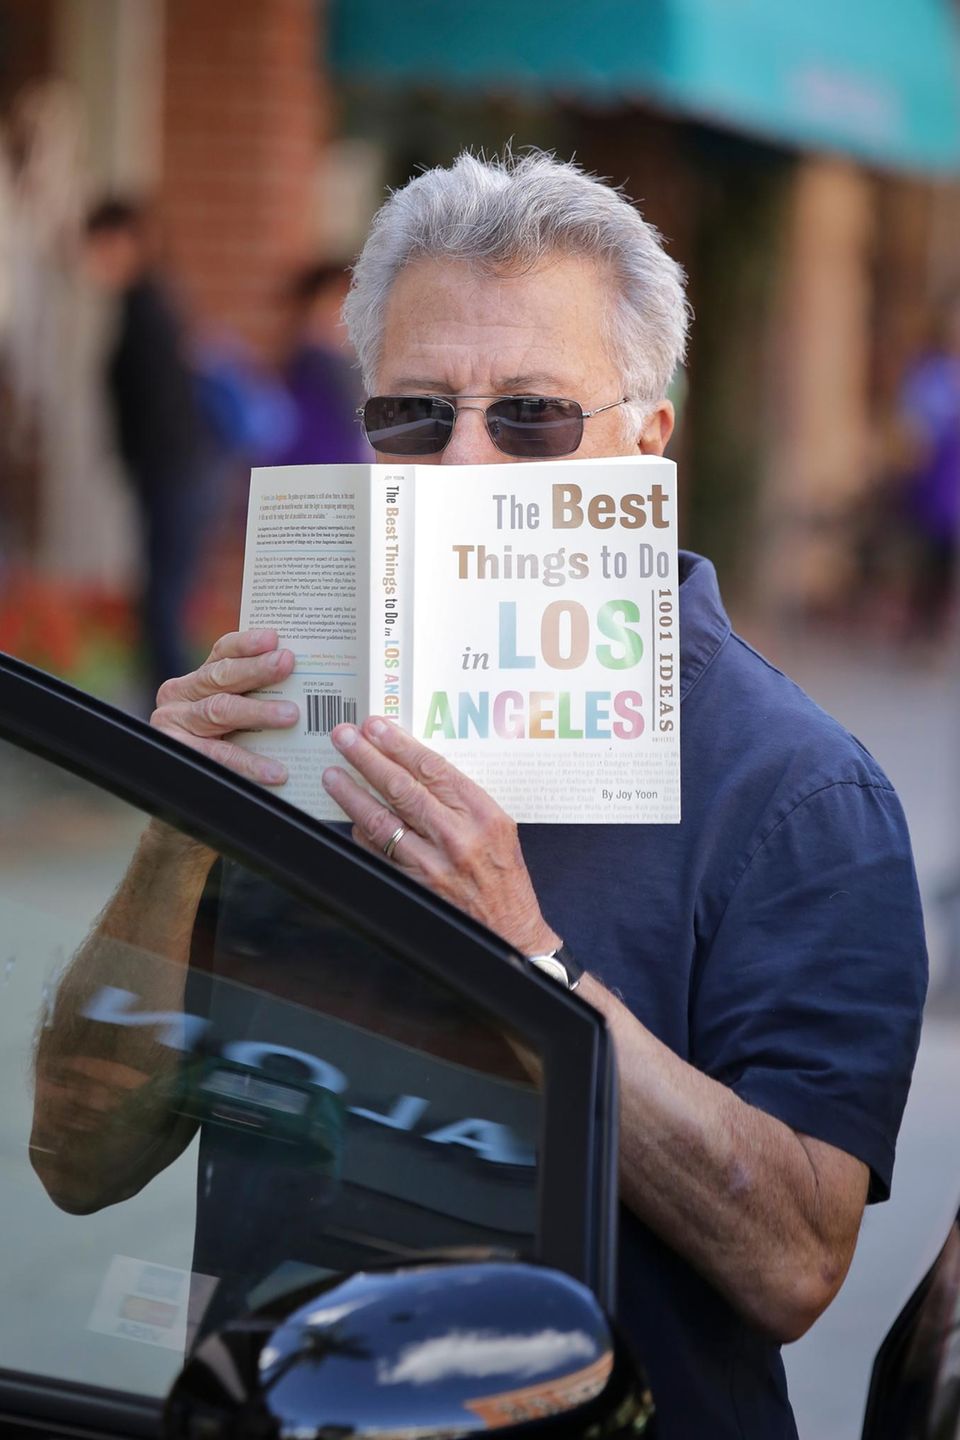 Nach seinem Arztbesuch versteckt sich Dustin Hoffman vor den Paparazzis hinter seinem Buch "The Best Things To Do In Los Angeles - 1001 Ideas".